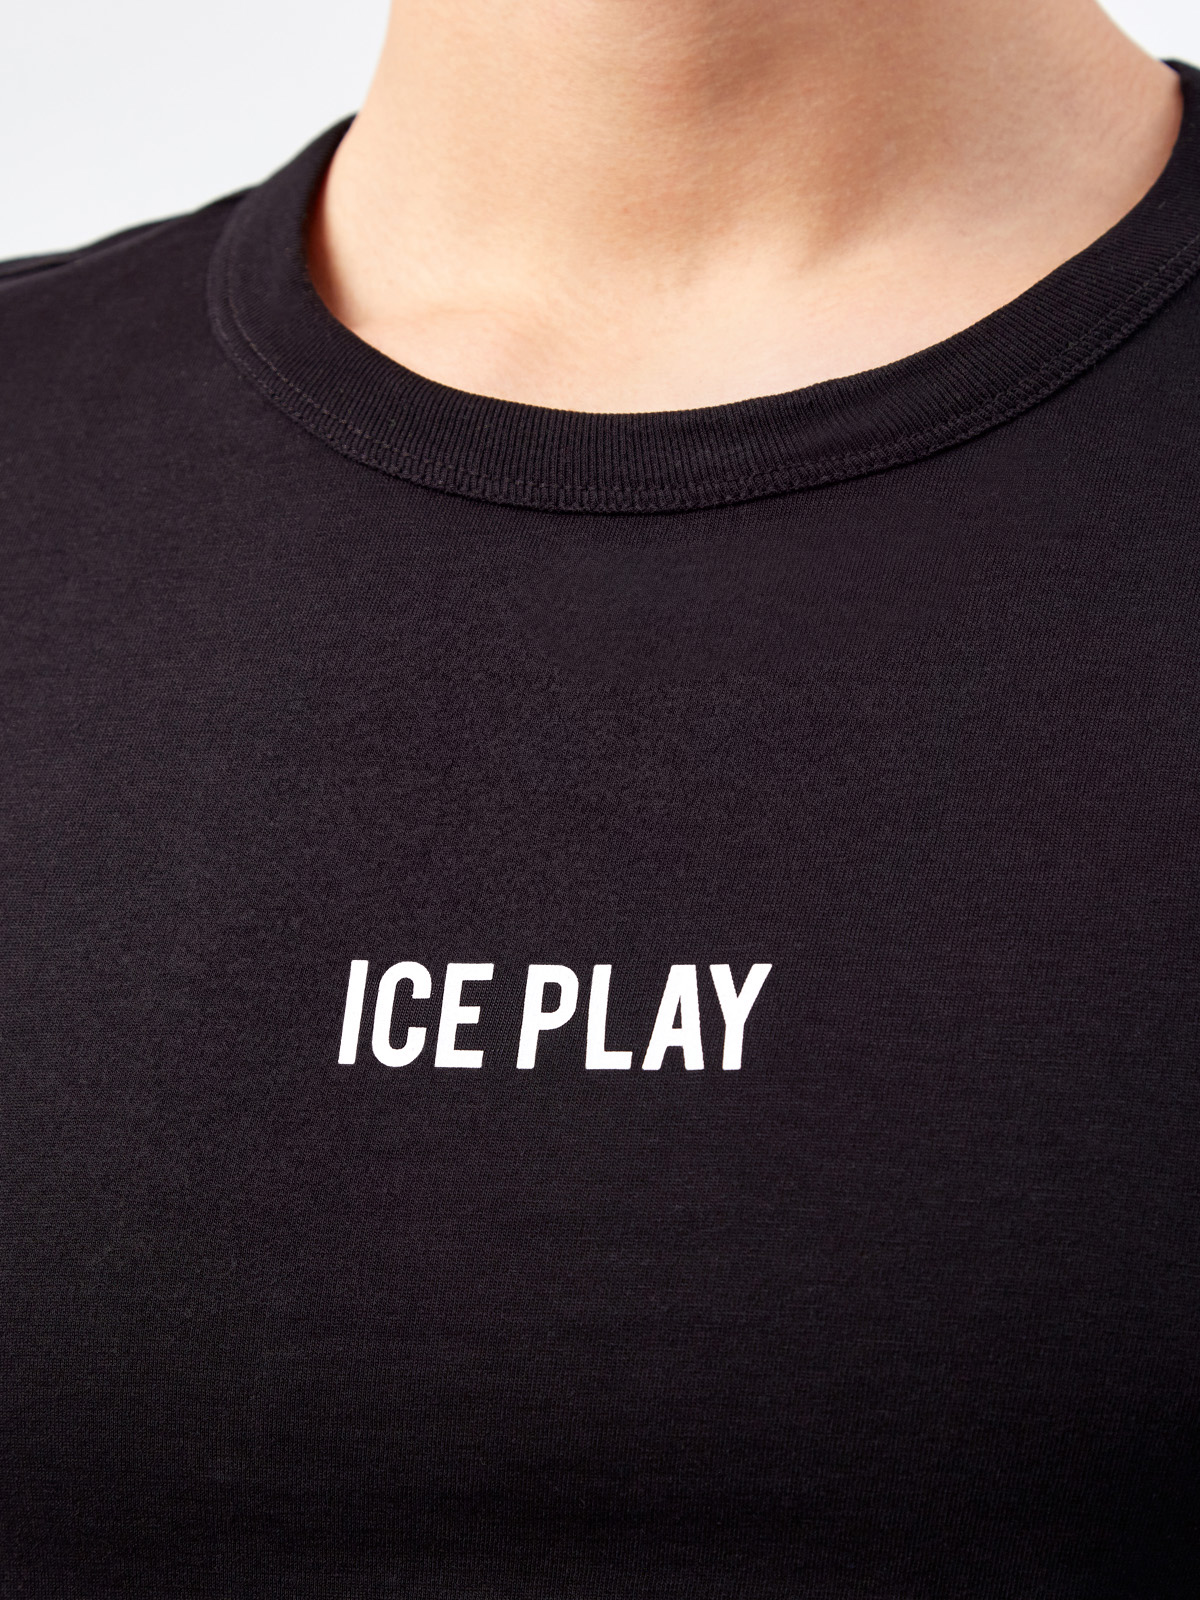 Монохромная футболка из гладкого хлопкового джерси ICE PLAY, цвет черный, размер S;M;L;XL - фото 5